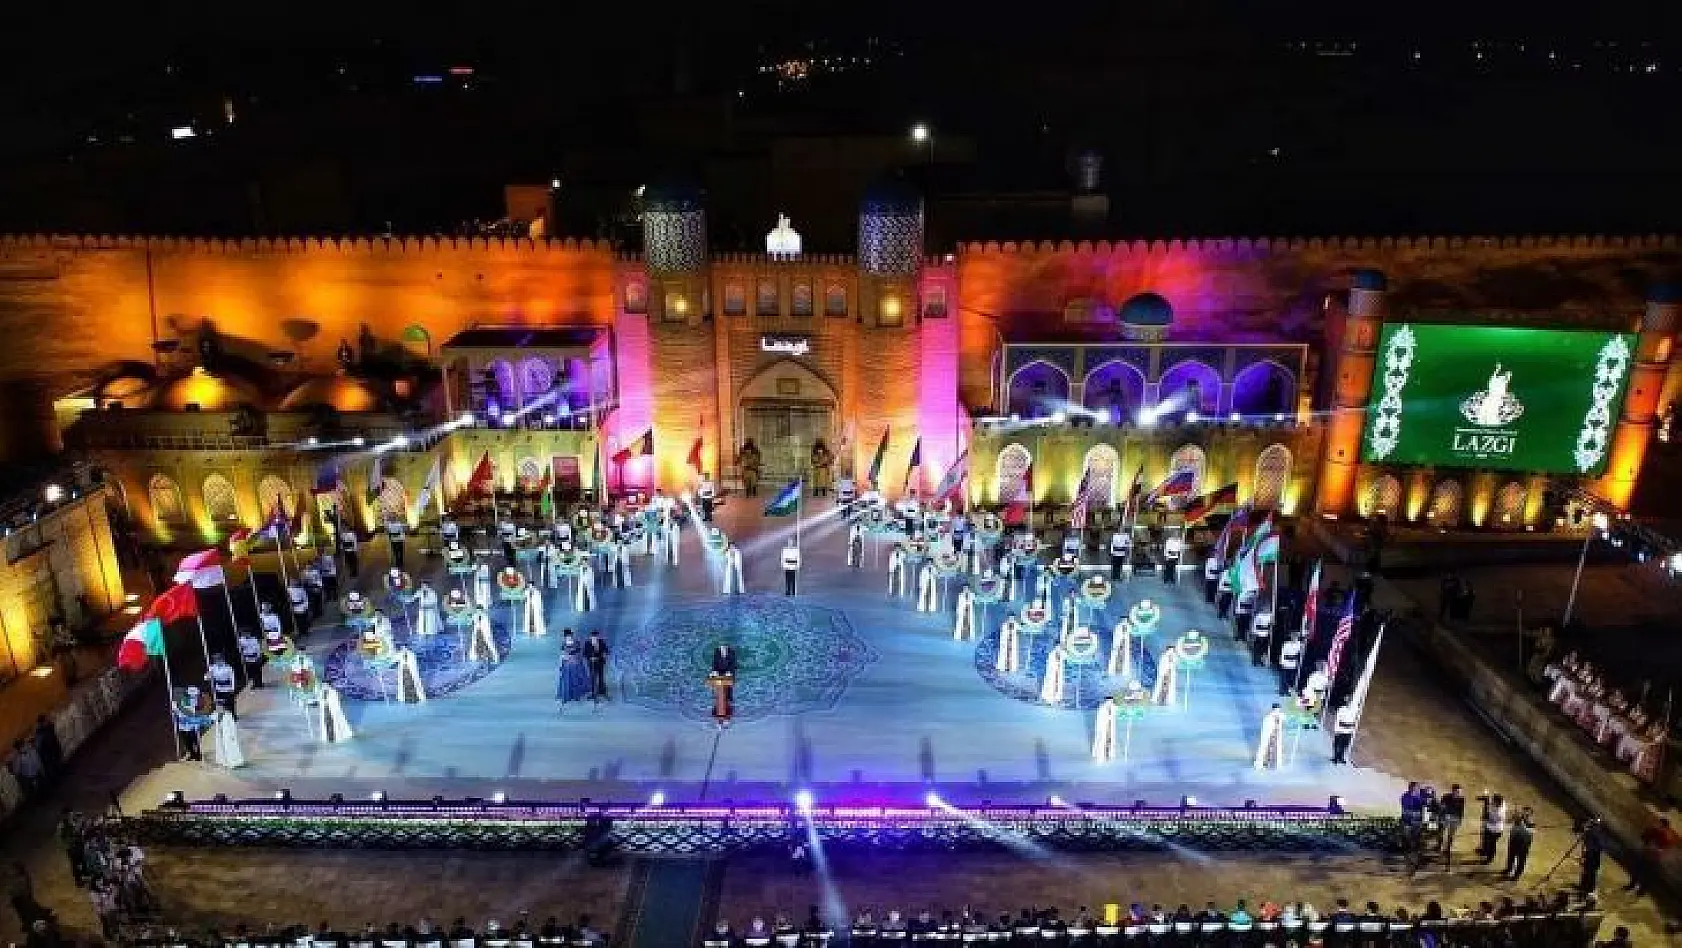 İnegöl Belediyesi Halk Dansları topluluğu Özbekistan'da 3. oldu